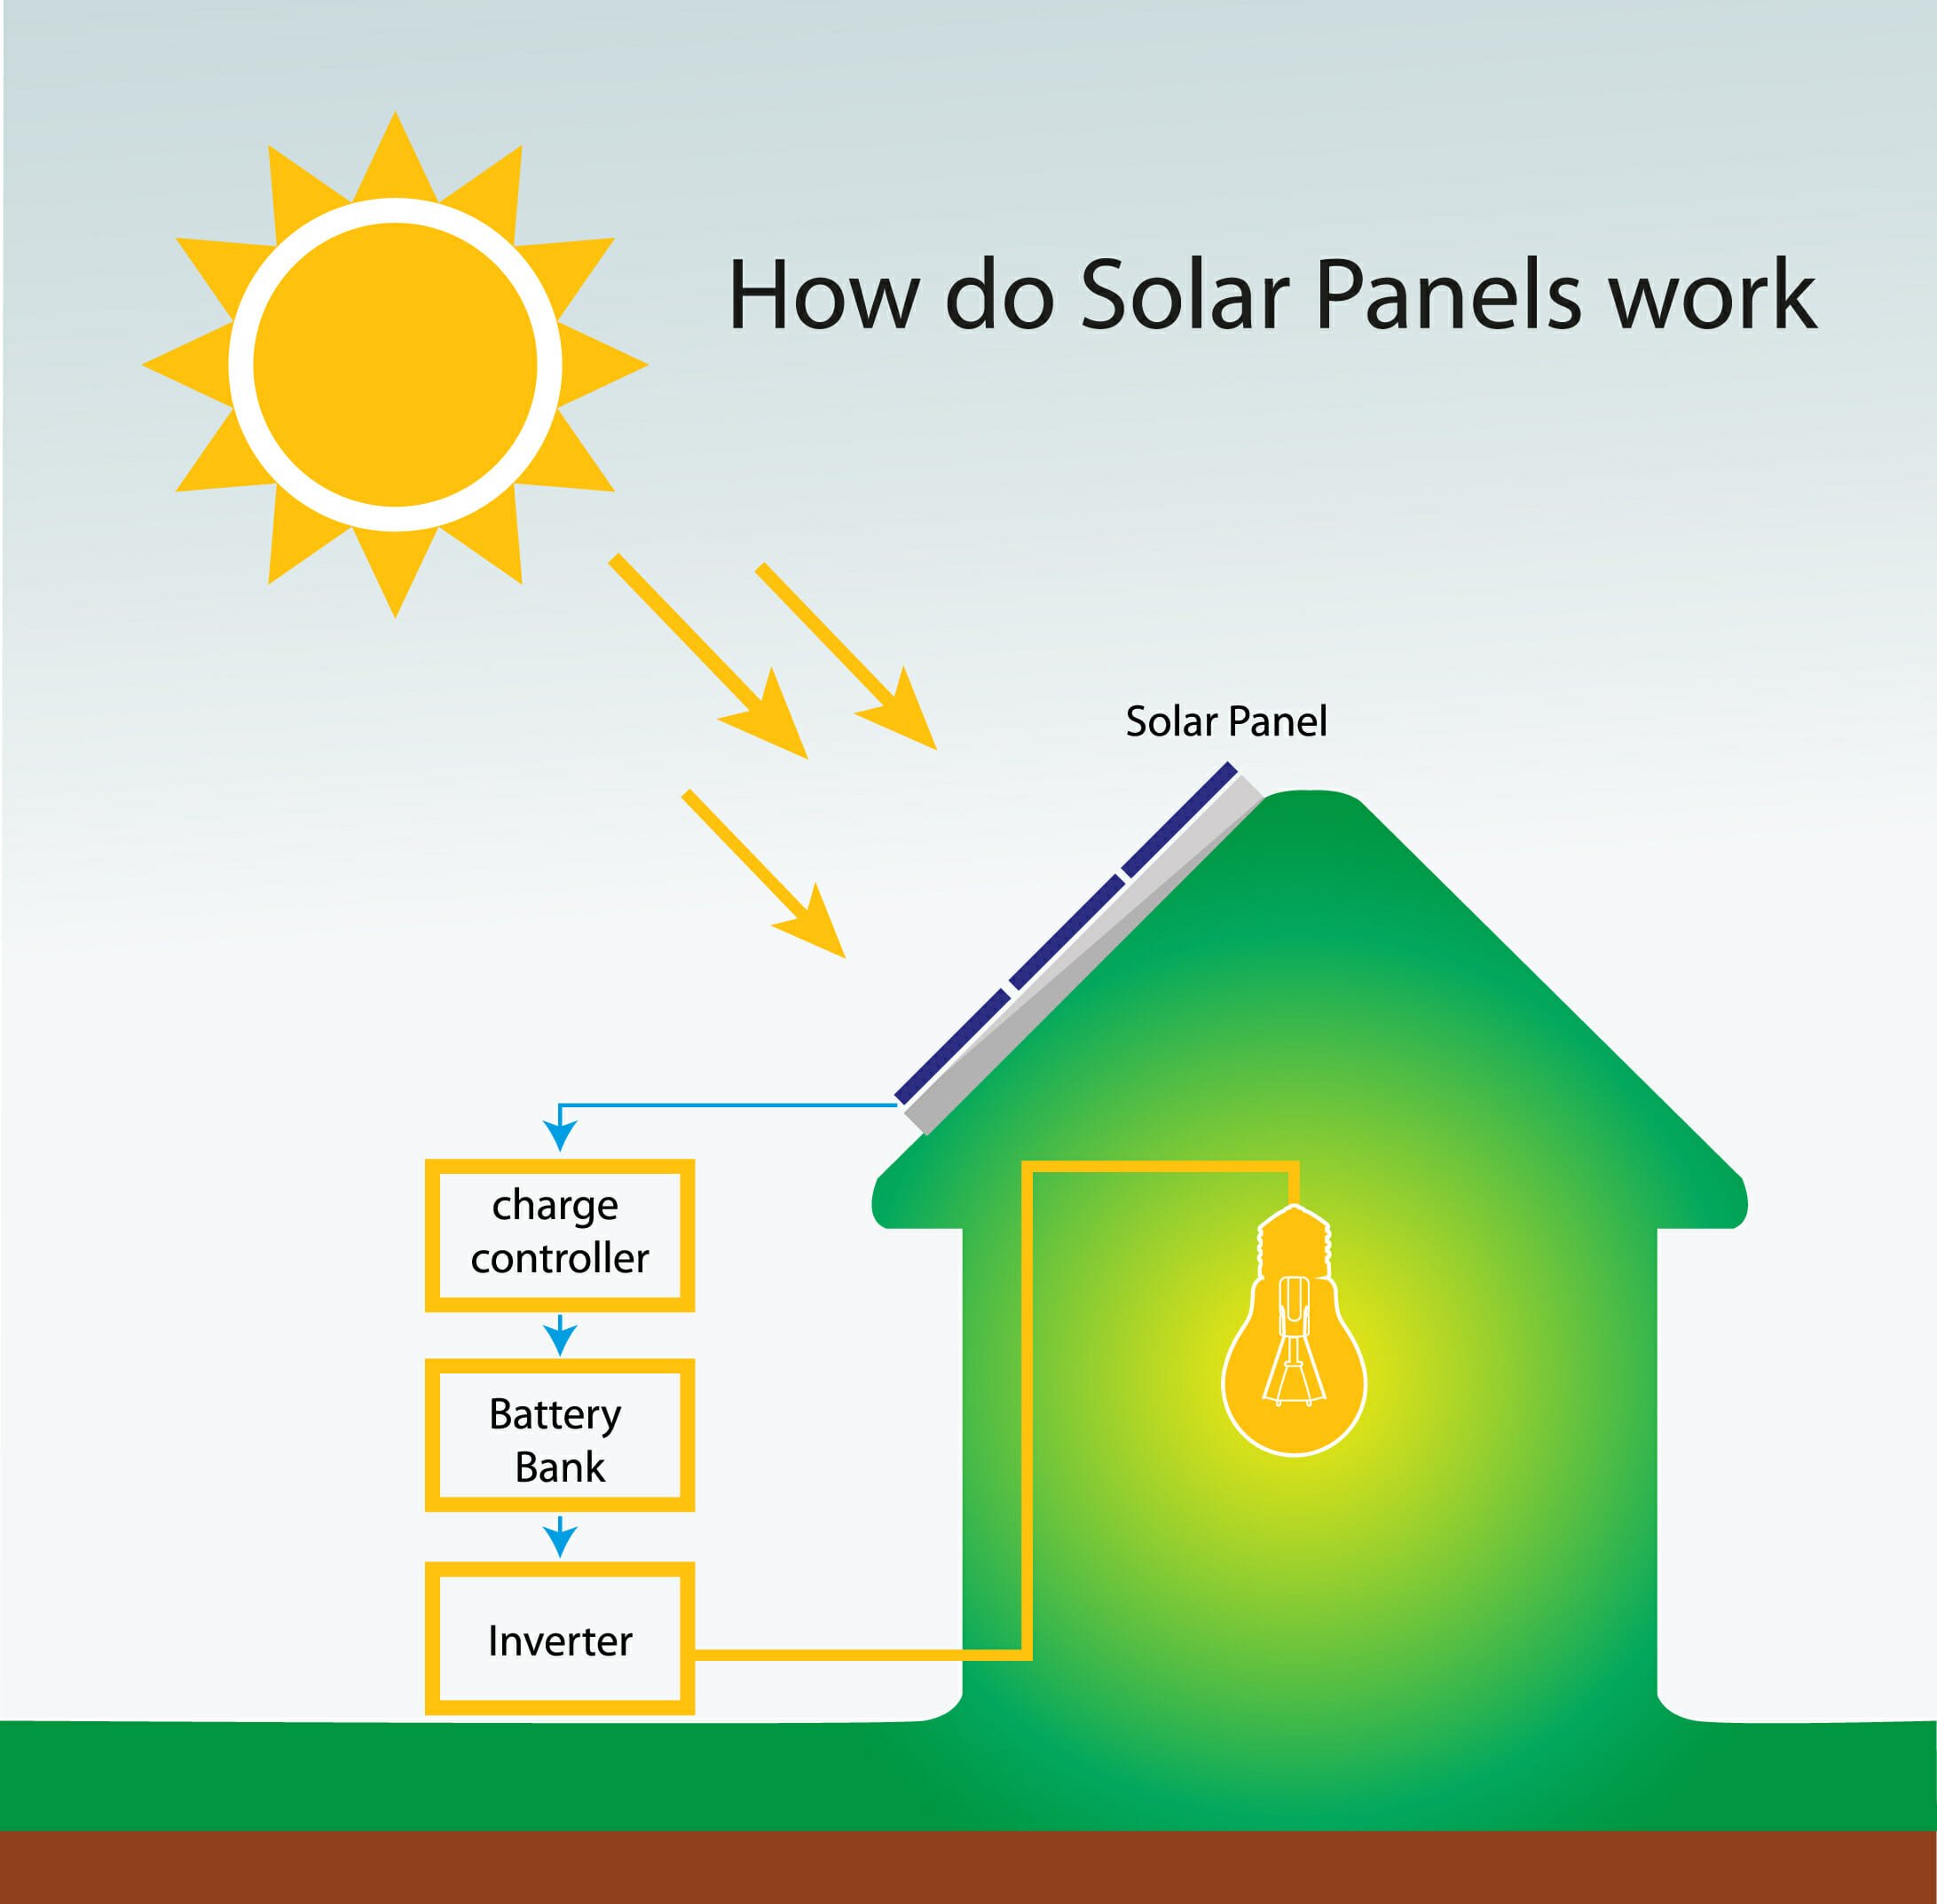 How do Solar Panels Work